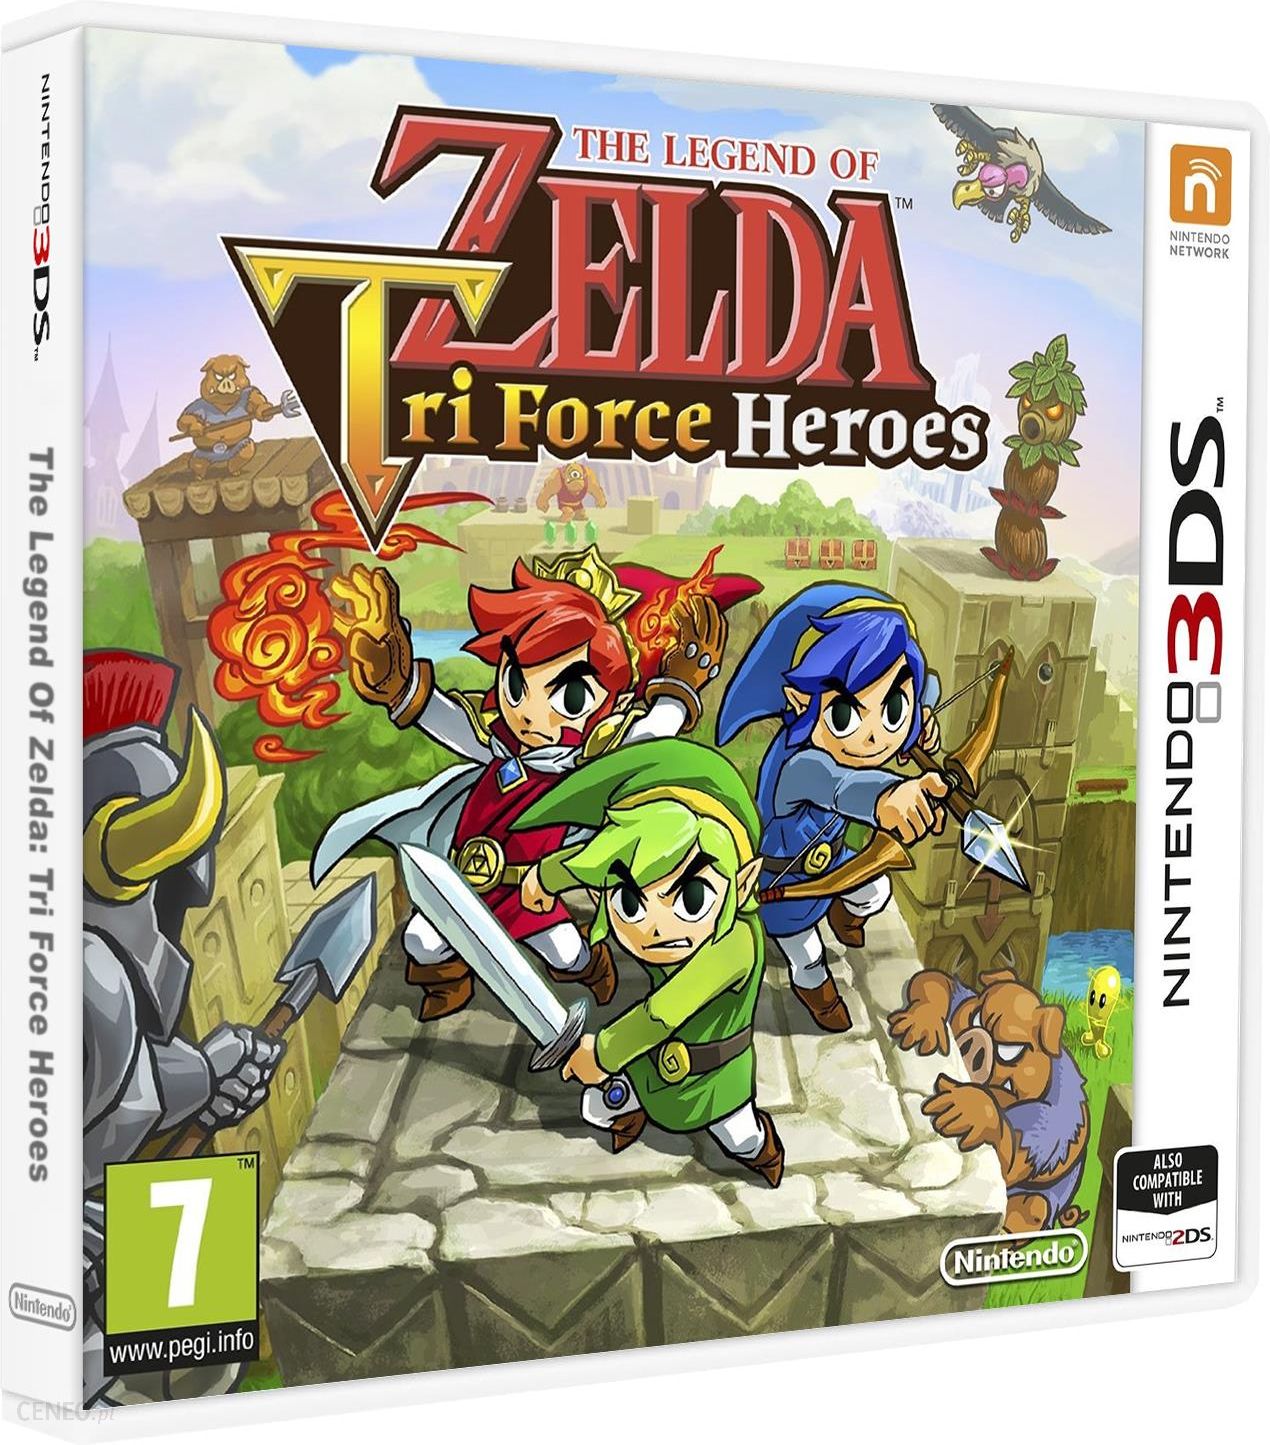 Nintendo force. The Legend of Zelda: tri Force Heroes. Zelda tri Force Heroes купить. The Legend of Zelda: tri Force Heroes Cover.